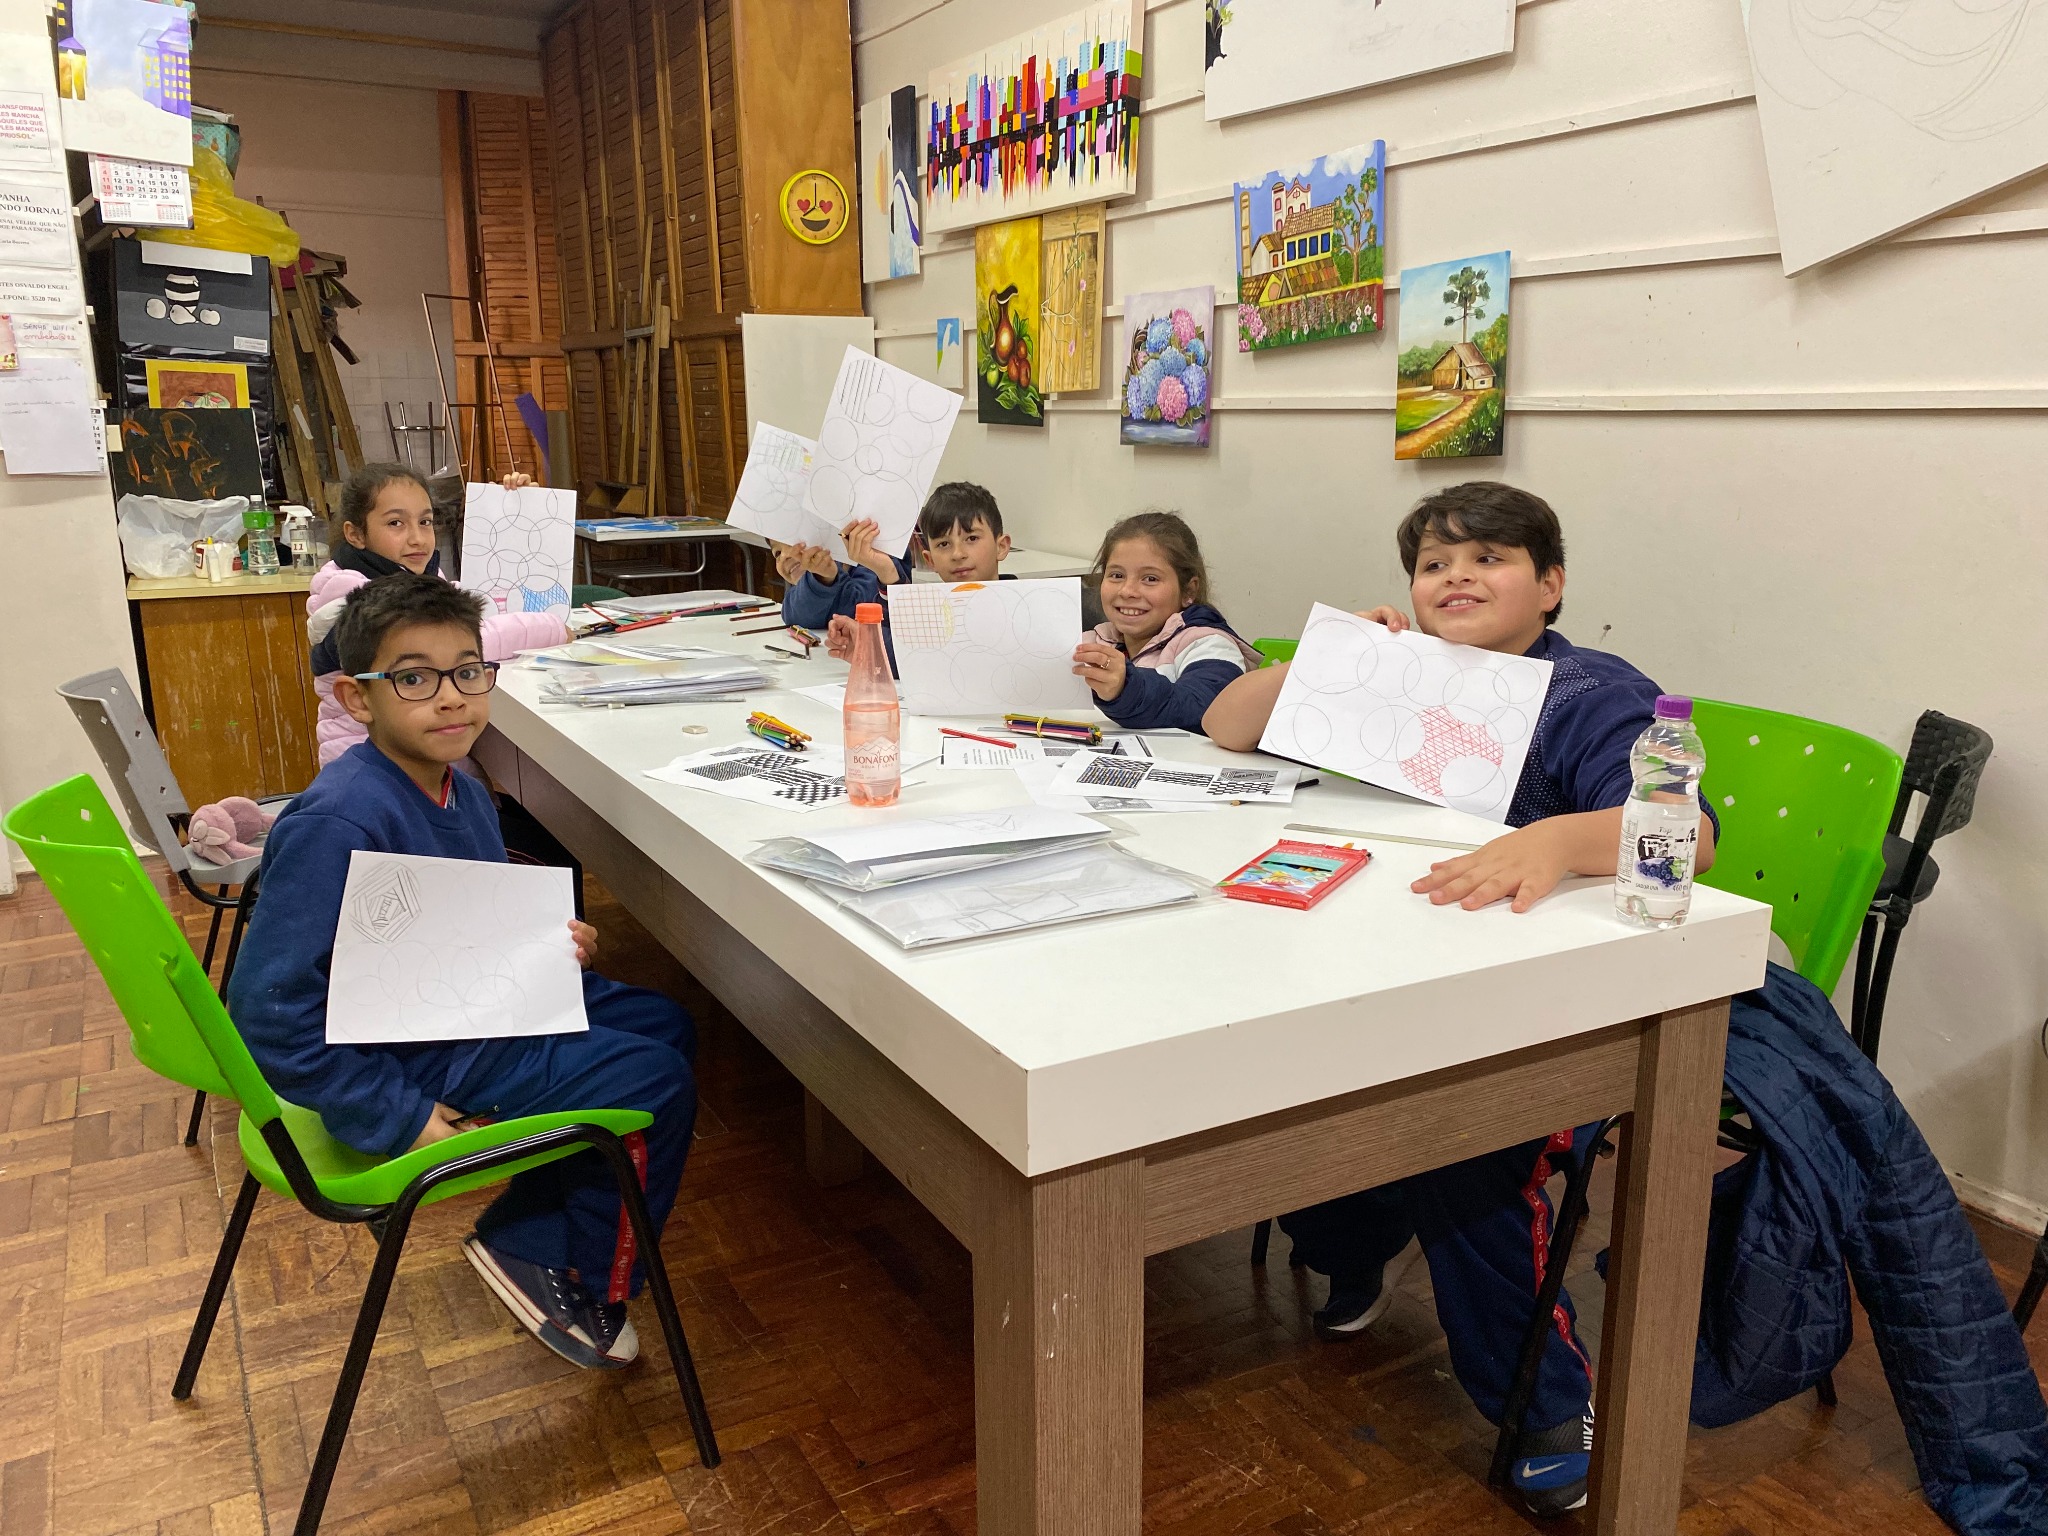  Centro  de Belas Artes Osvaldo Engel integra atividades de Educa??o Integral das Escolas Municipais